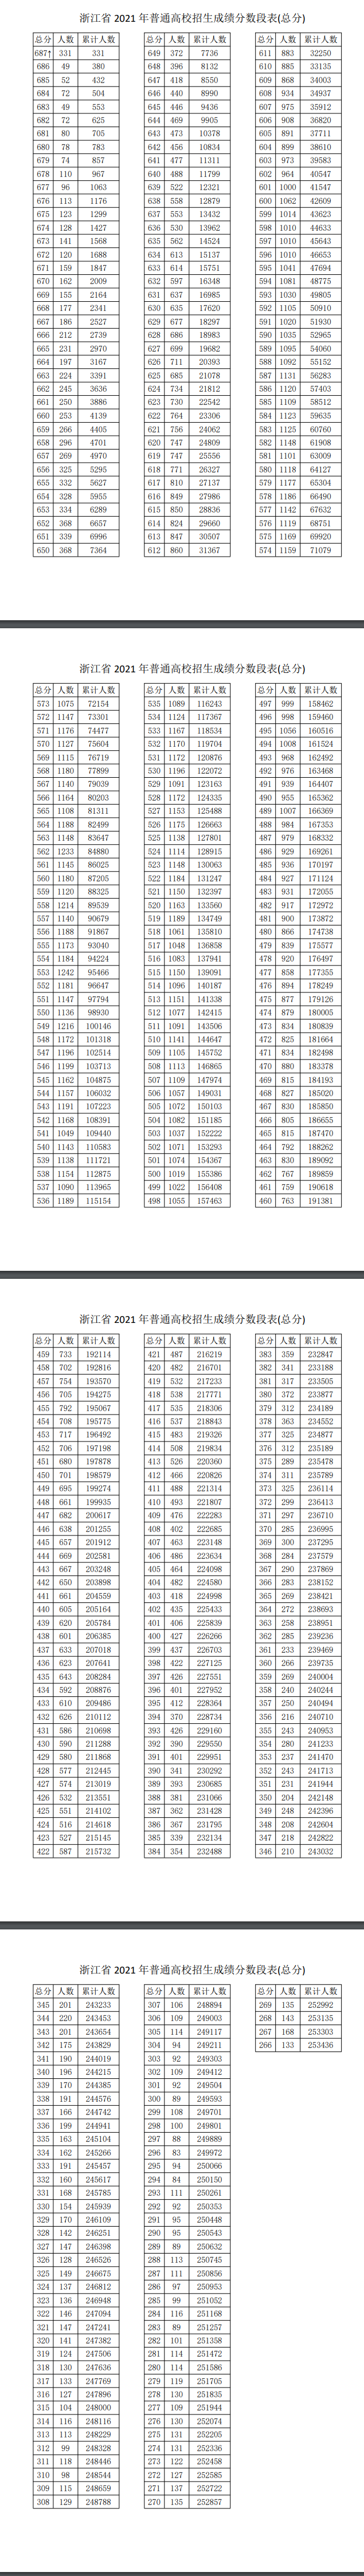 2022年浙江高考一分一段表公布